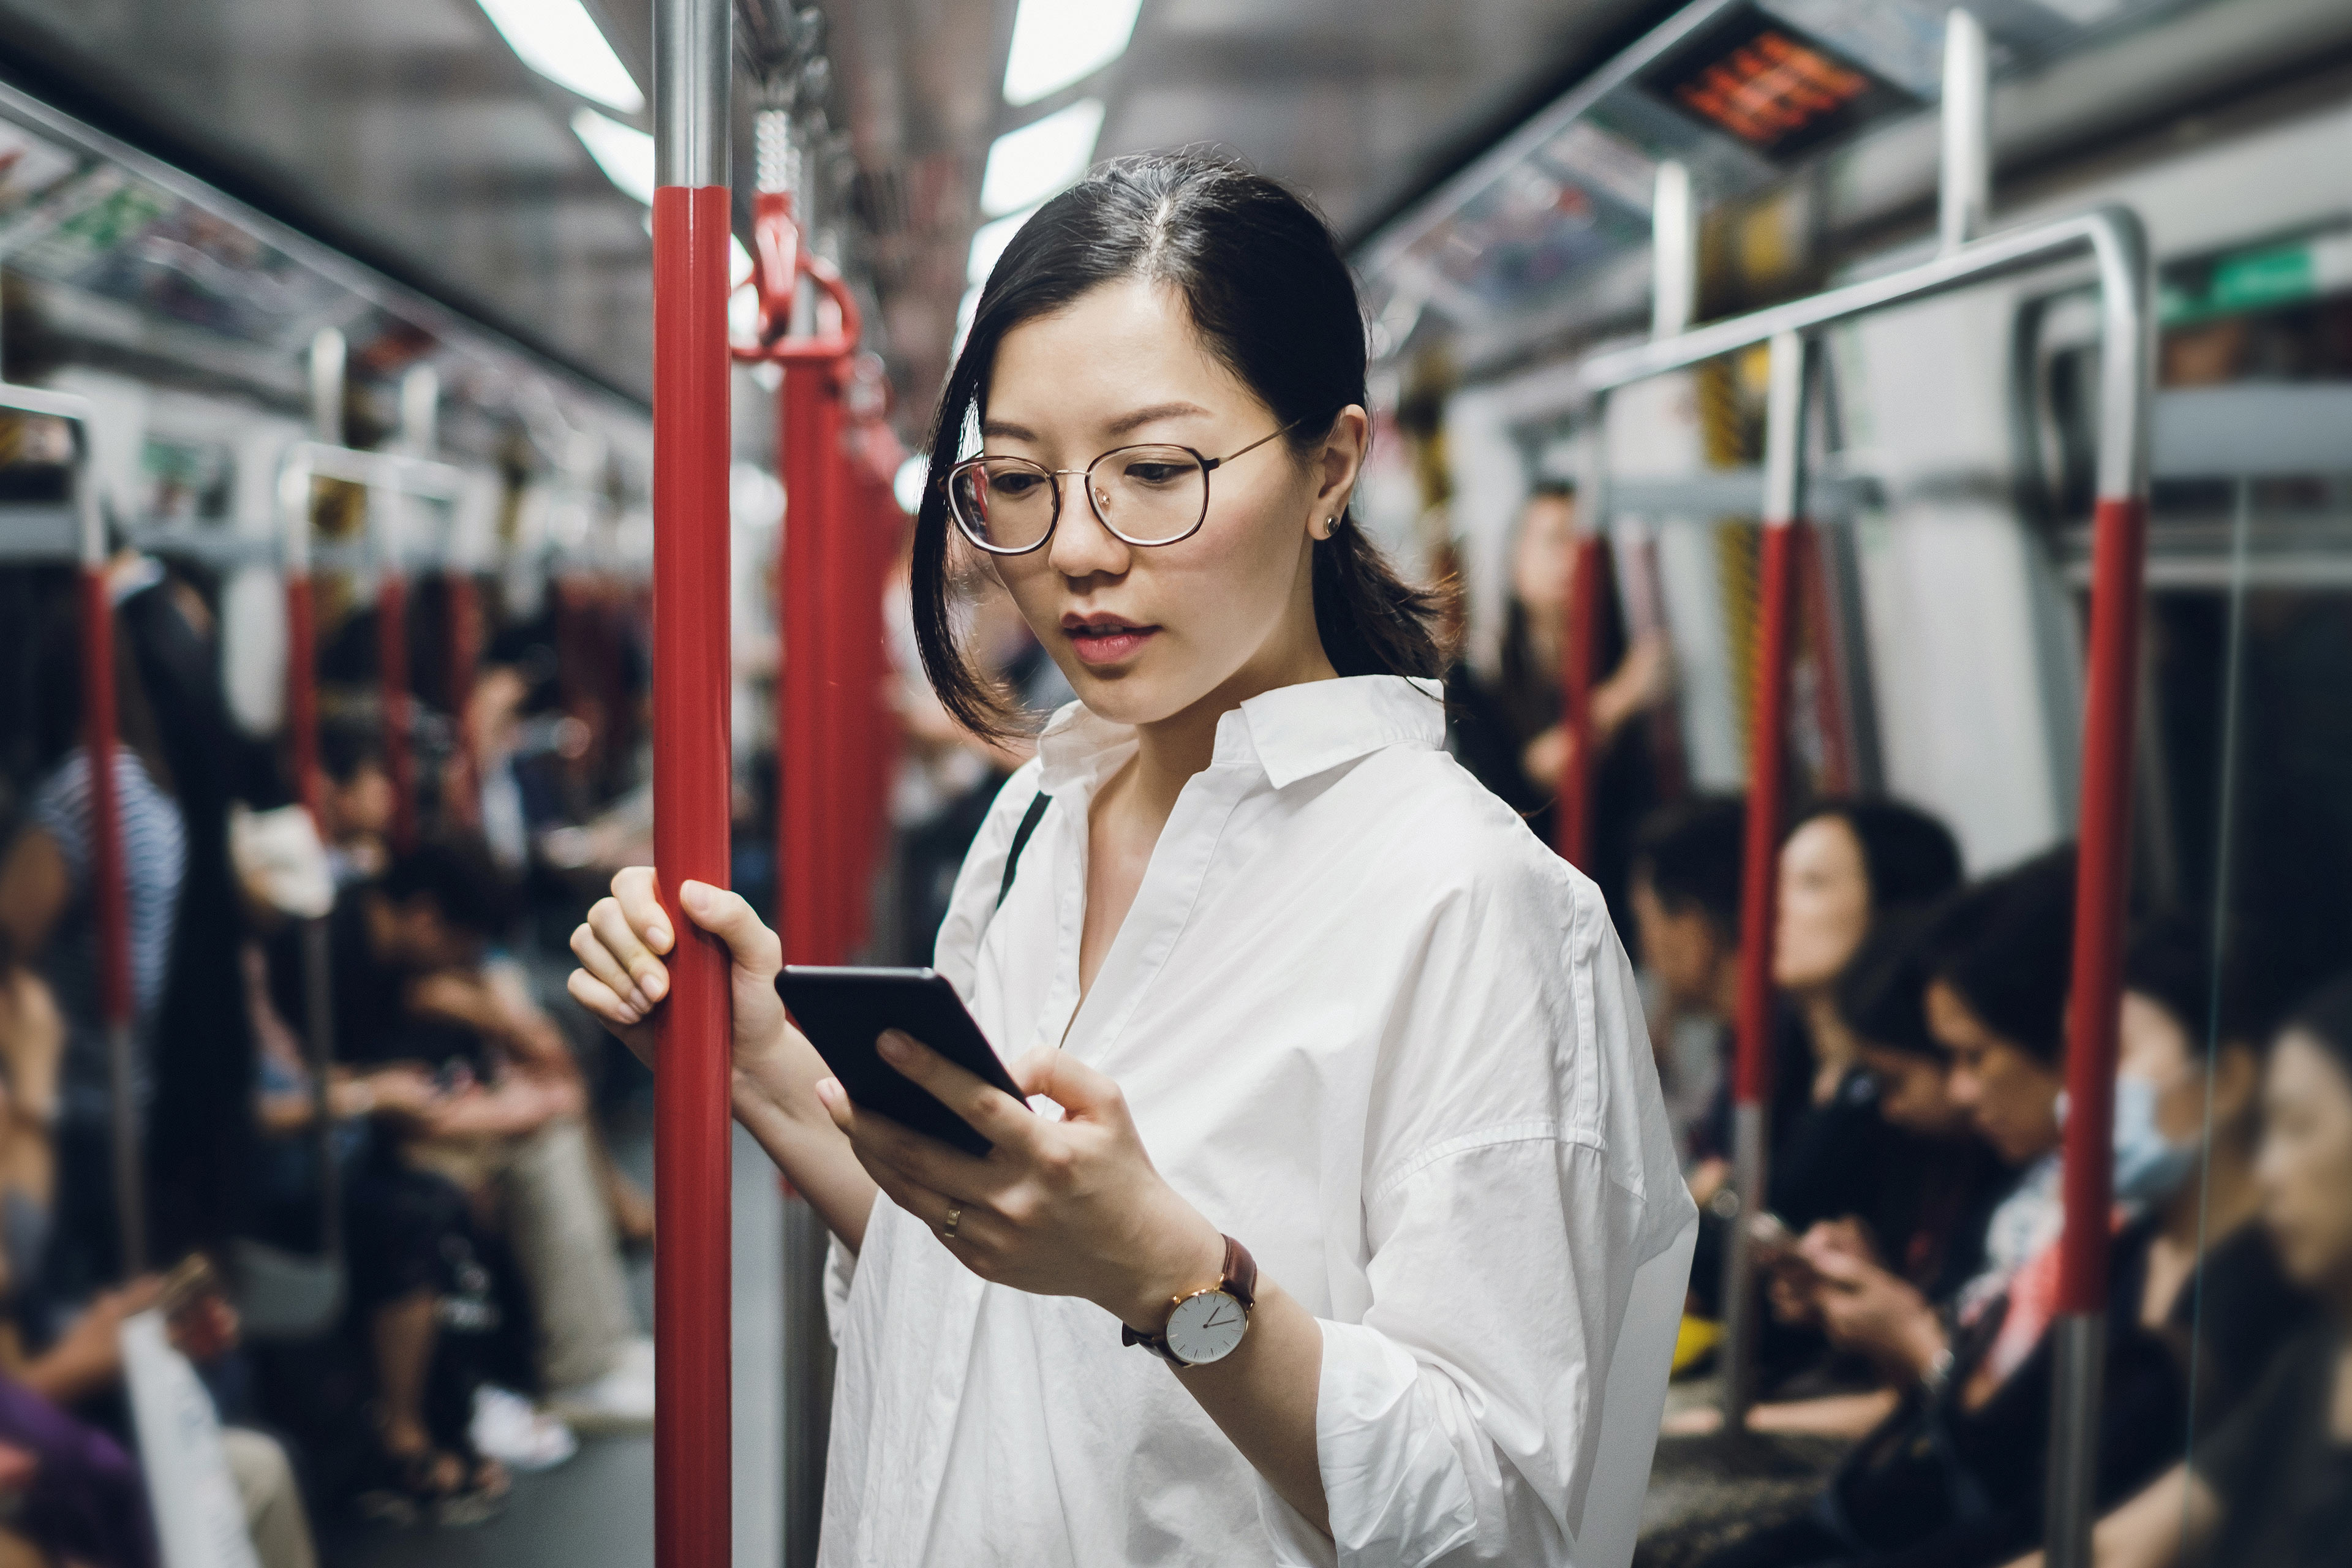 Une femme portant des lunettes consulte son cellulaire dans le métro.